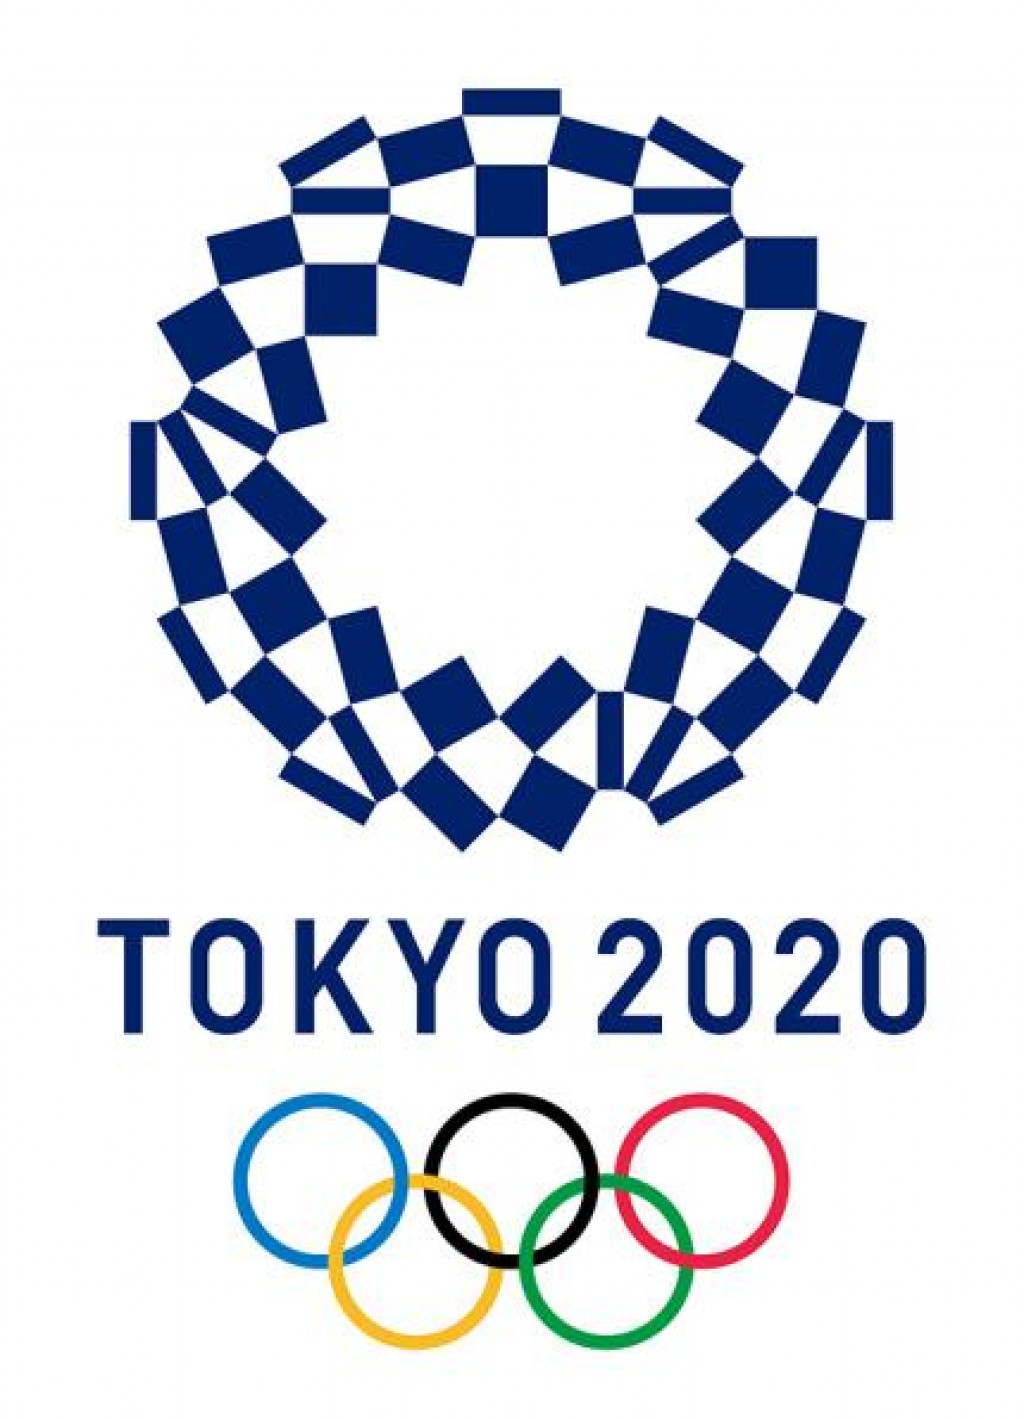 Olimpijske igre - Tokio 2020. godine